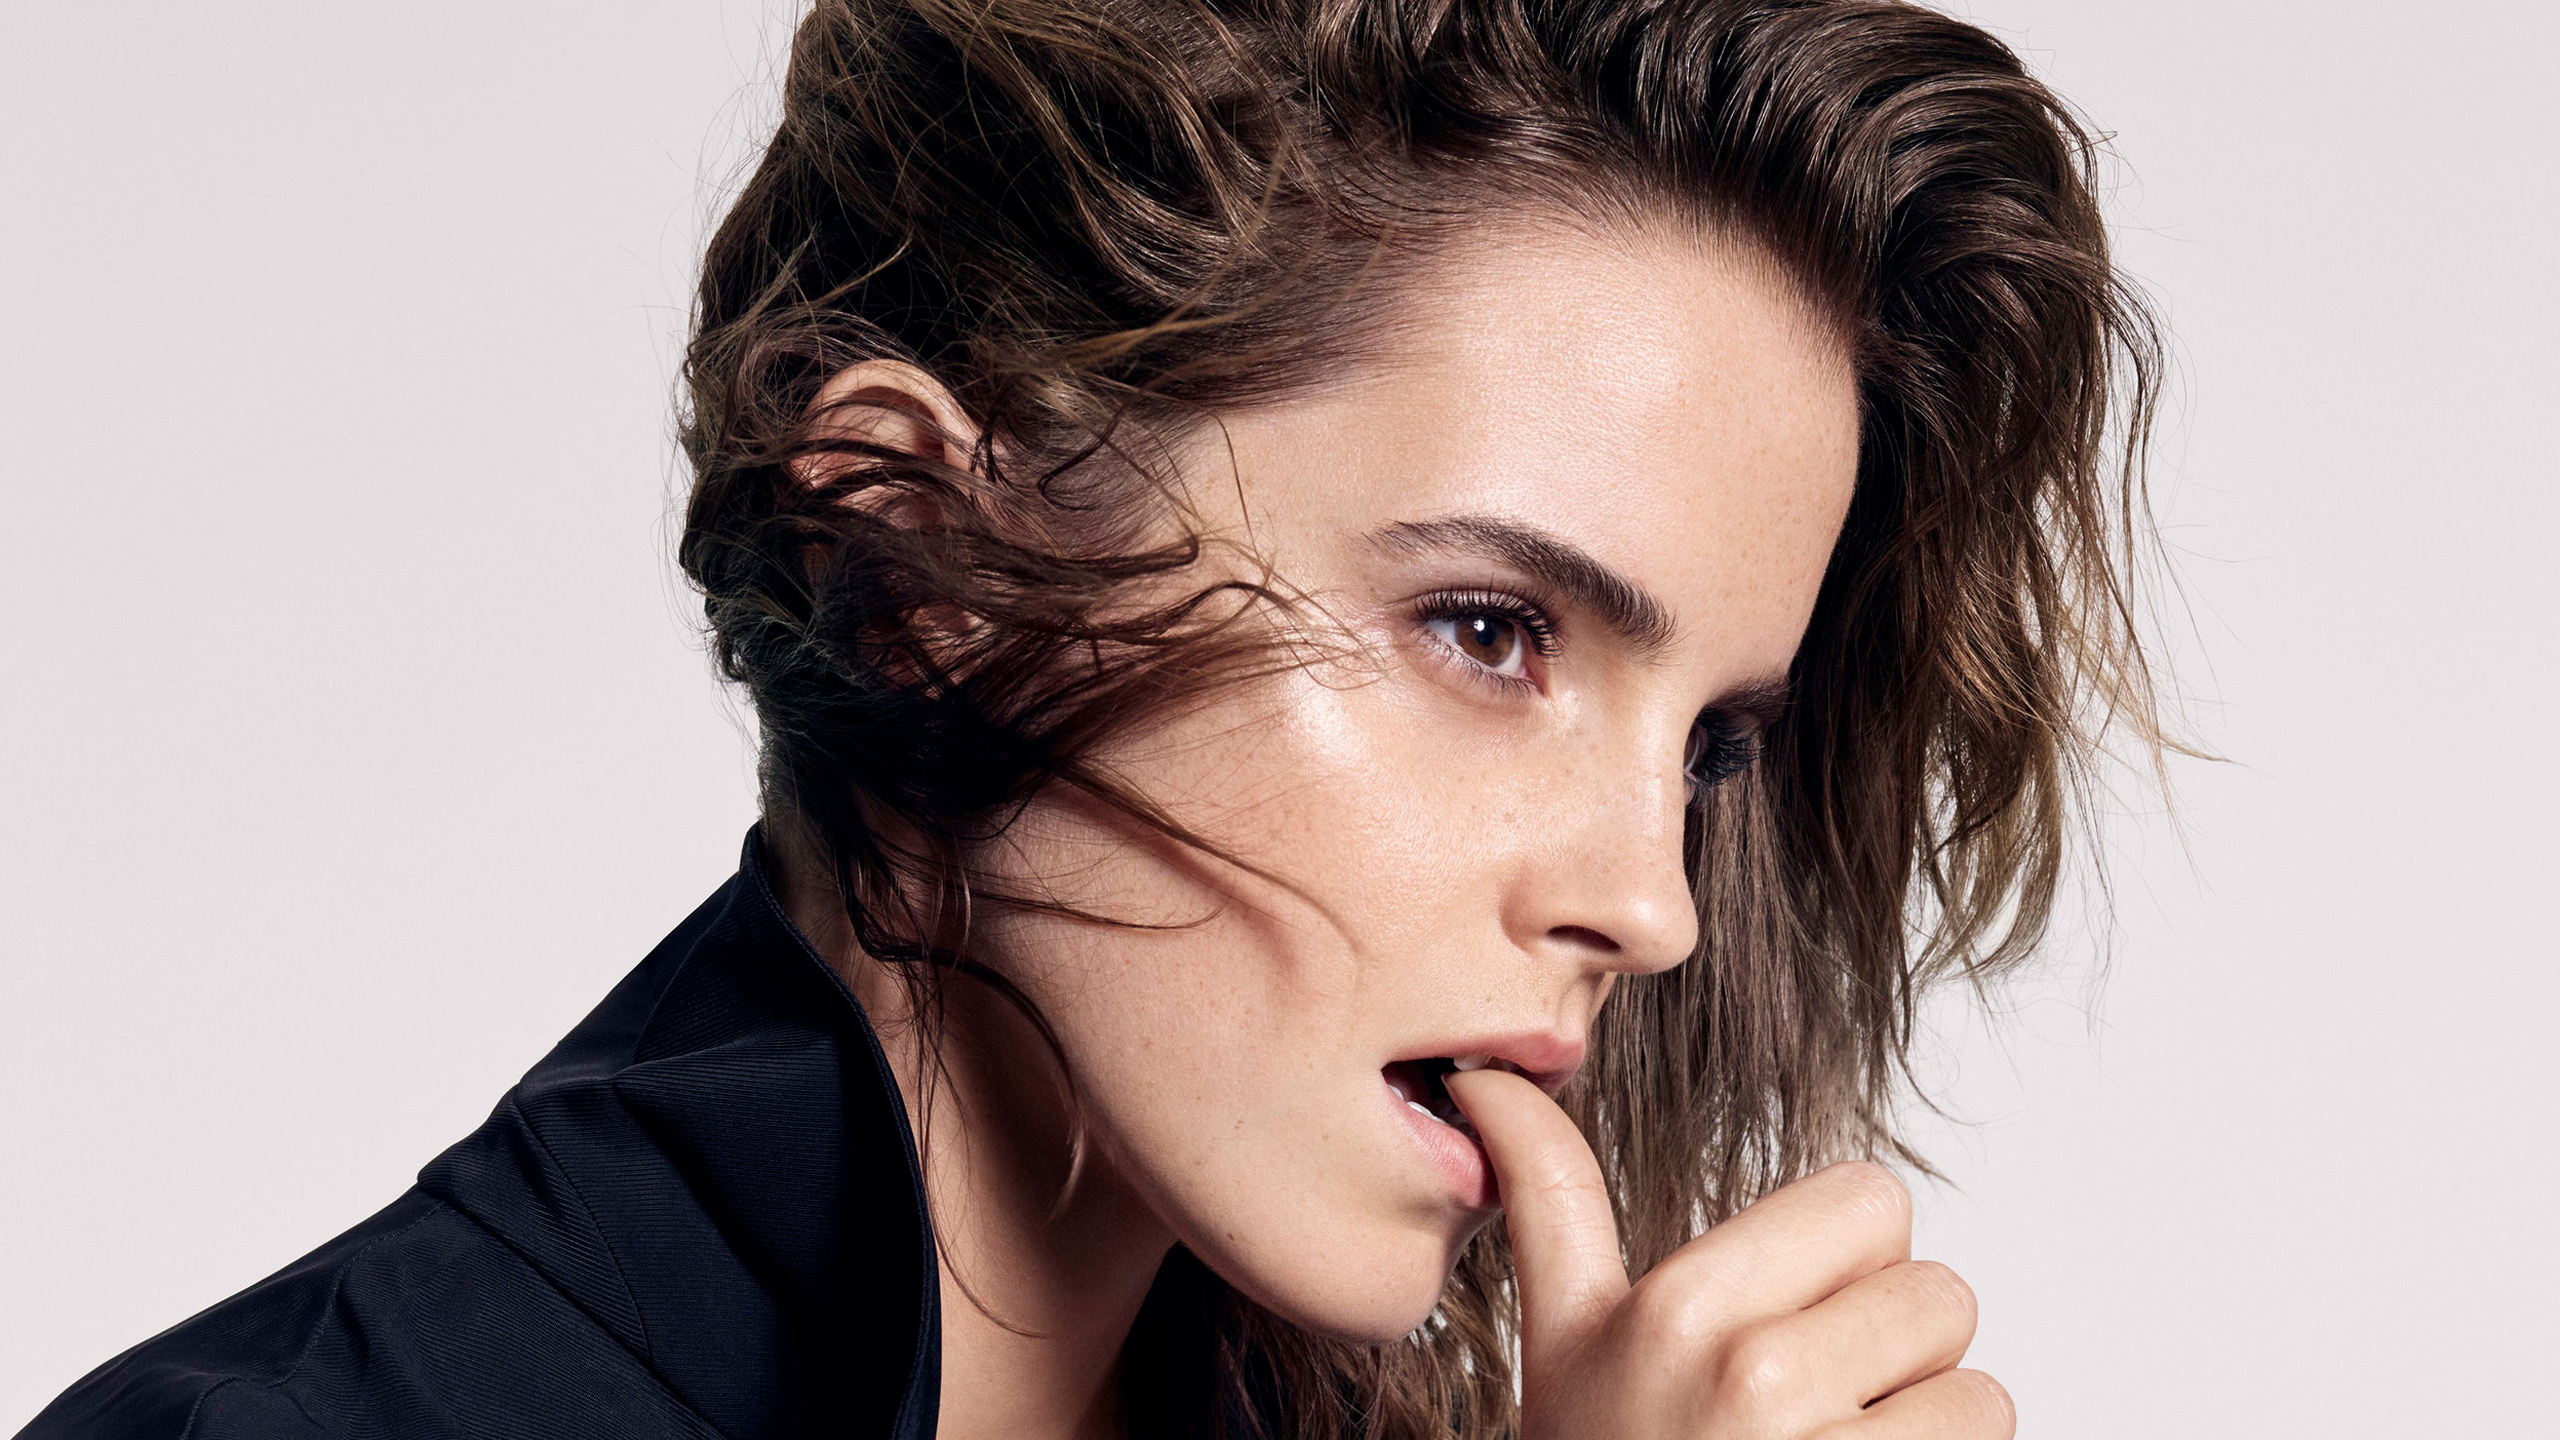 Emma Watson 2017 HD Wallpapers